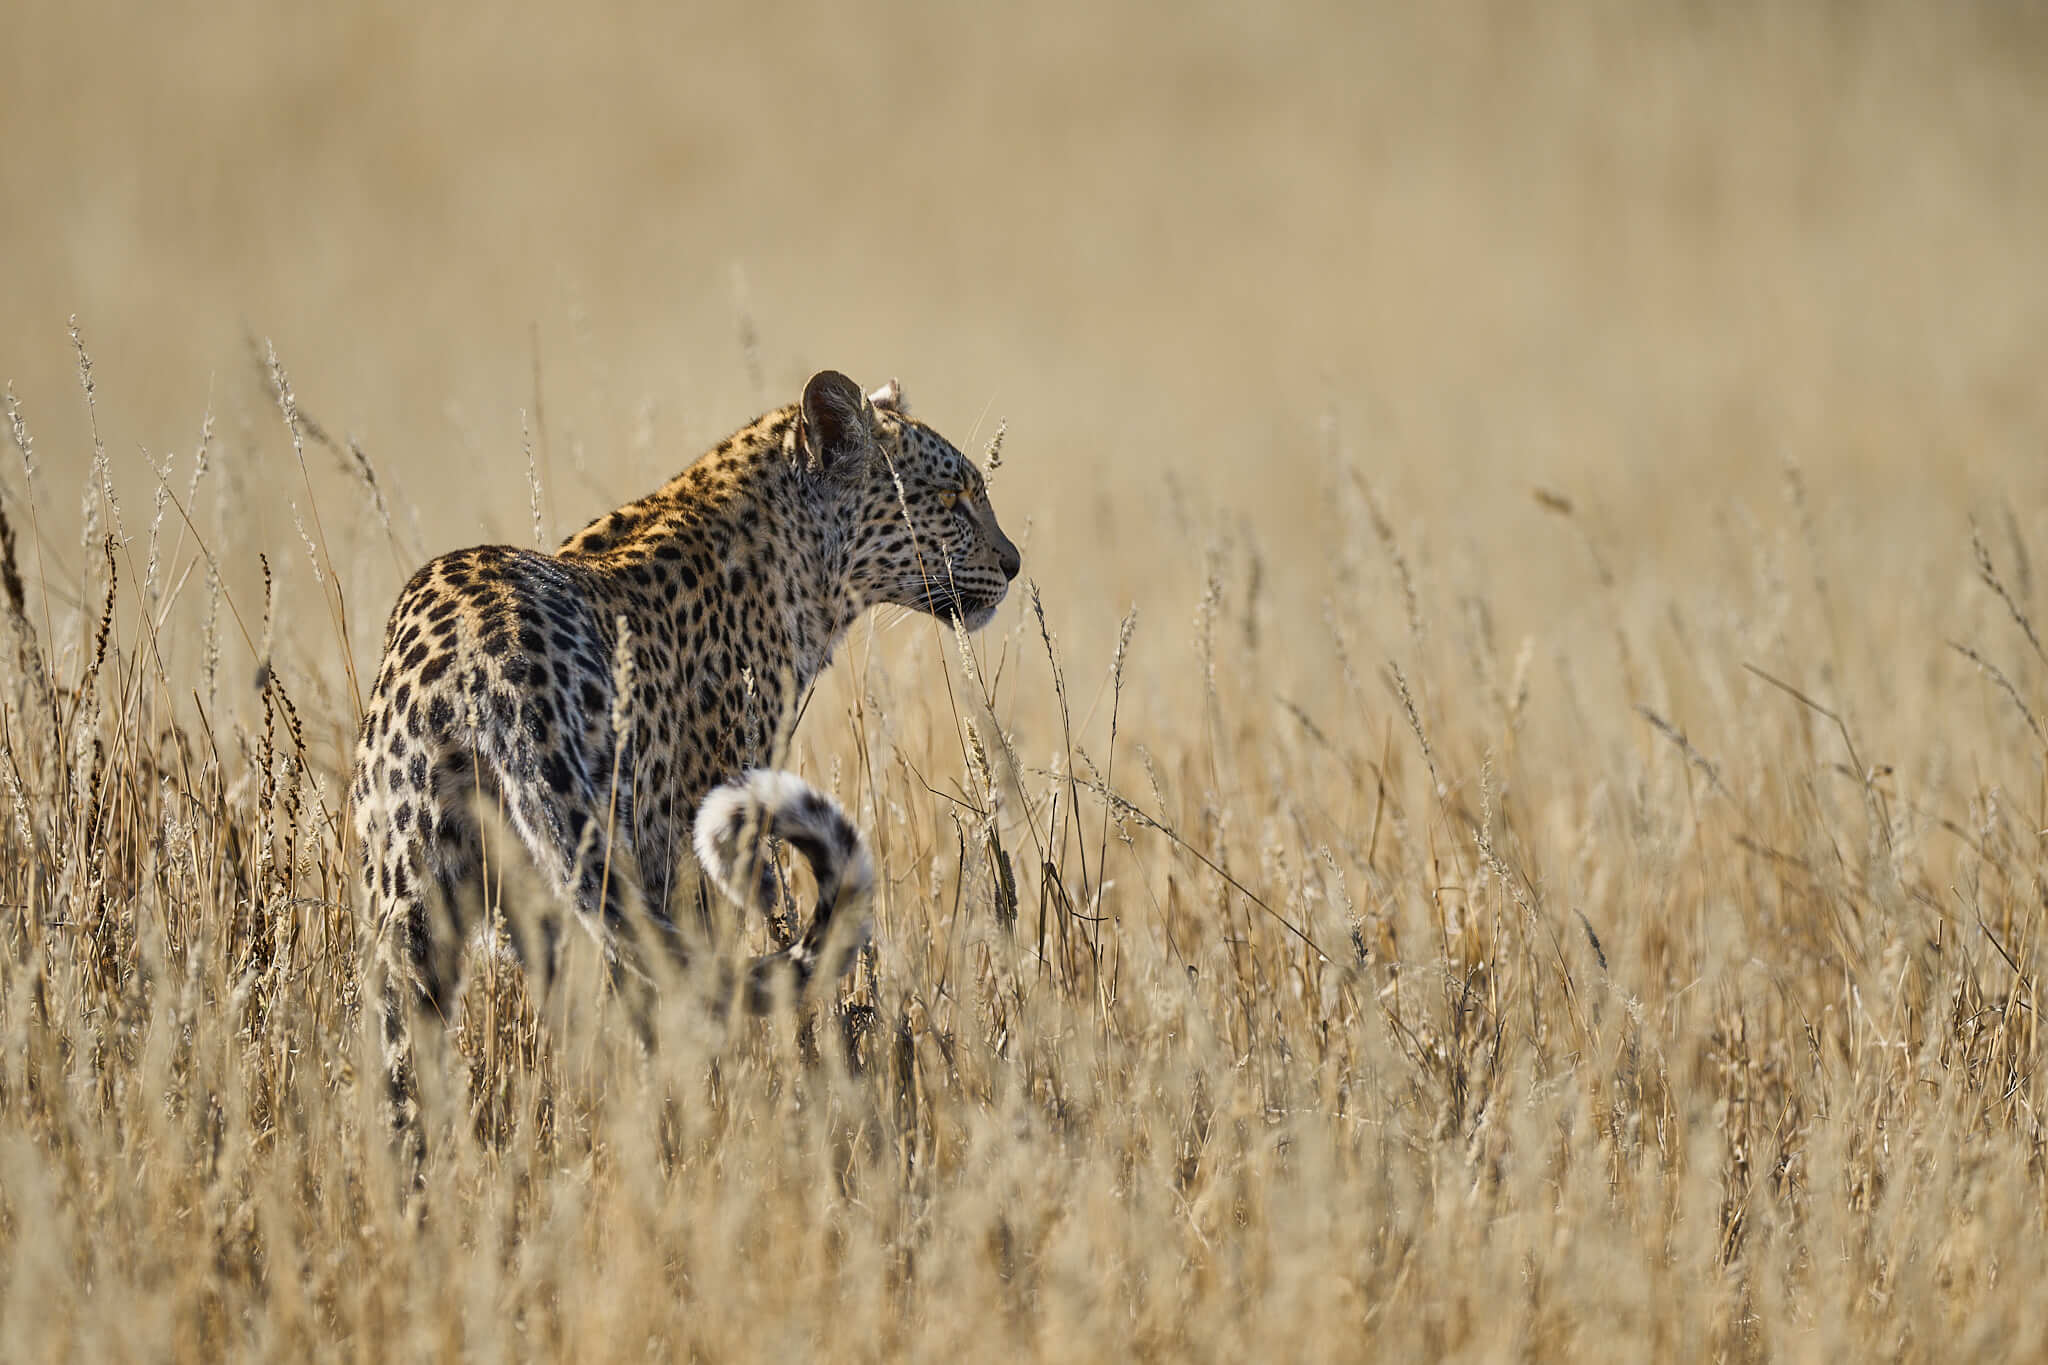 Das Bild zeigt einen leoparden im hohen Gras